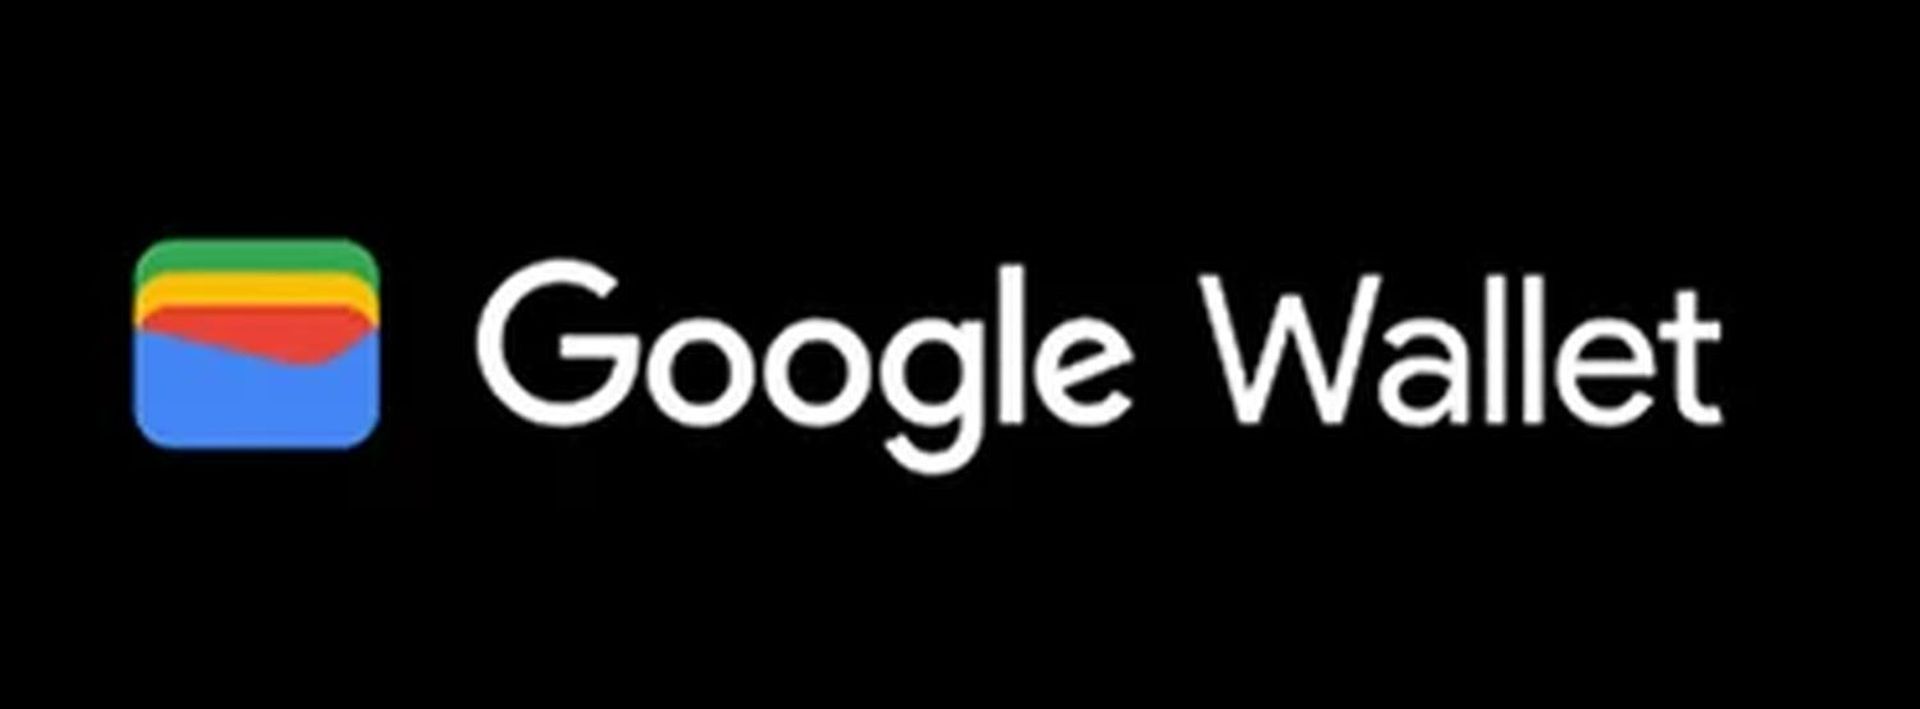 Átfogó útmutatónkból megtudhatja, miért nem működik a Google Wallet! Ezenkívül érdemes kipróbálni a Google Wallet alternatíváit. Fedezze fel most!